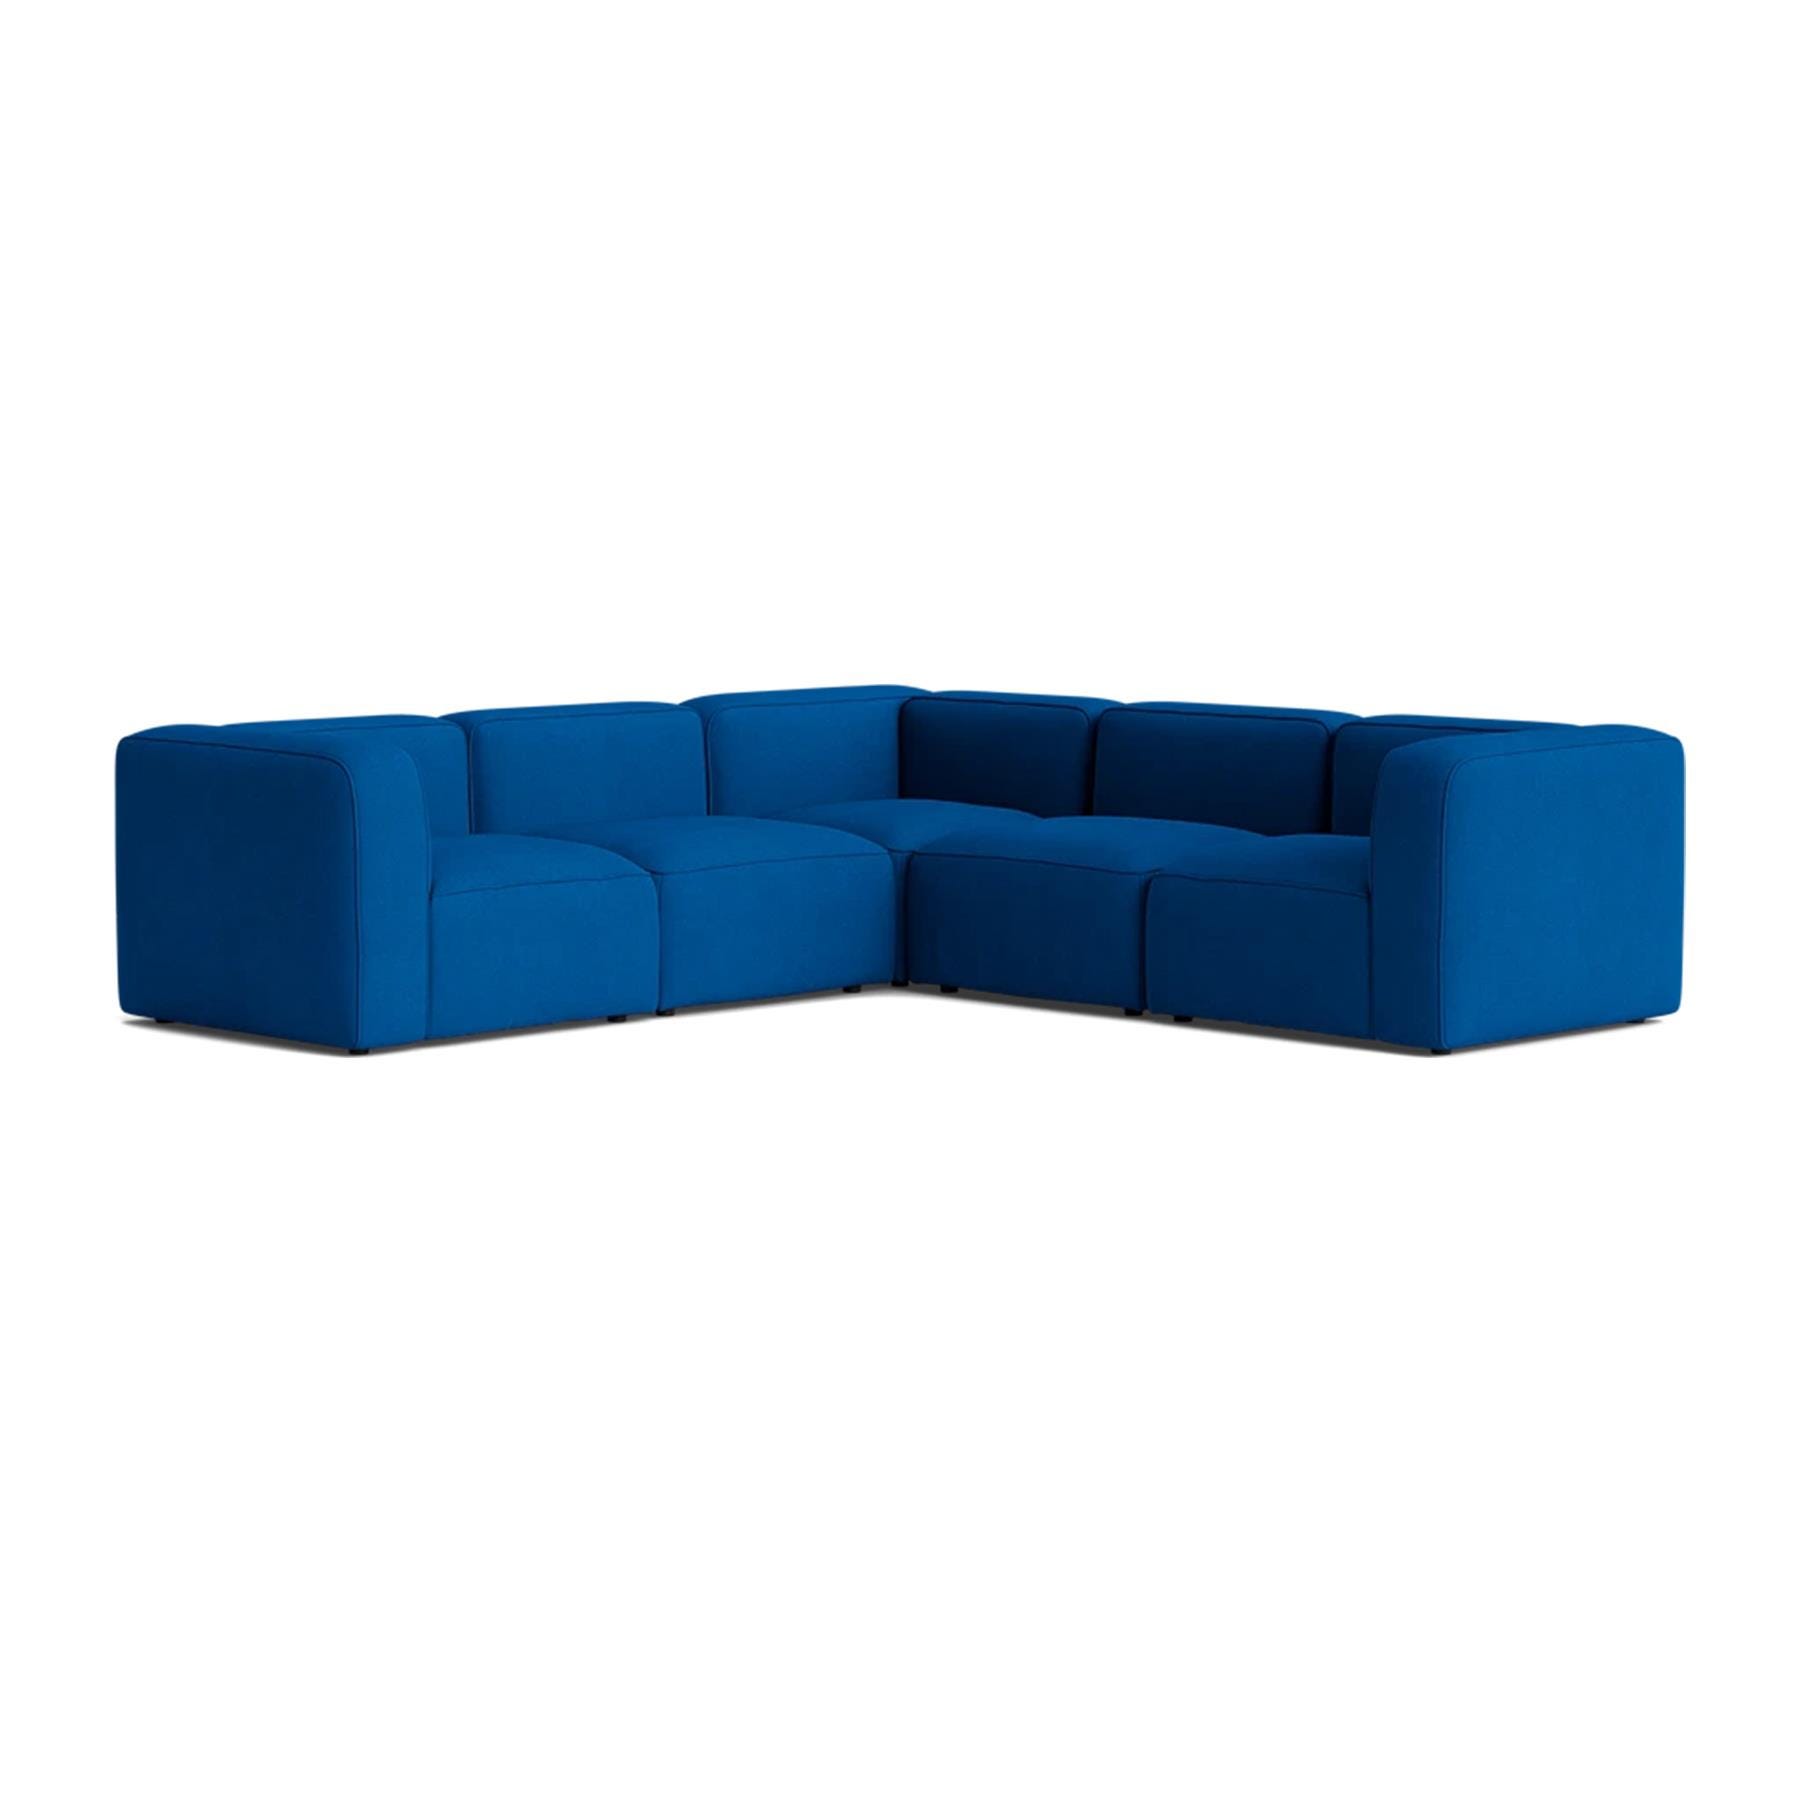 Make Nordic Basecamp Corner Sofa Hallingdal 750 Blue Designer Furniture From Holloways Of Ludlow